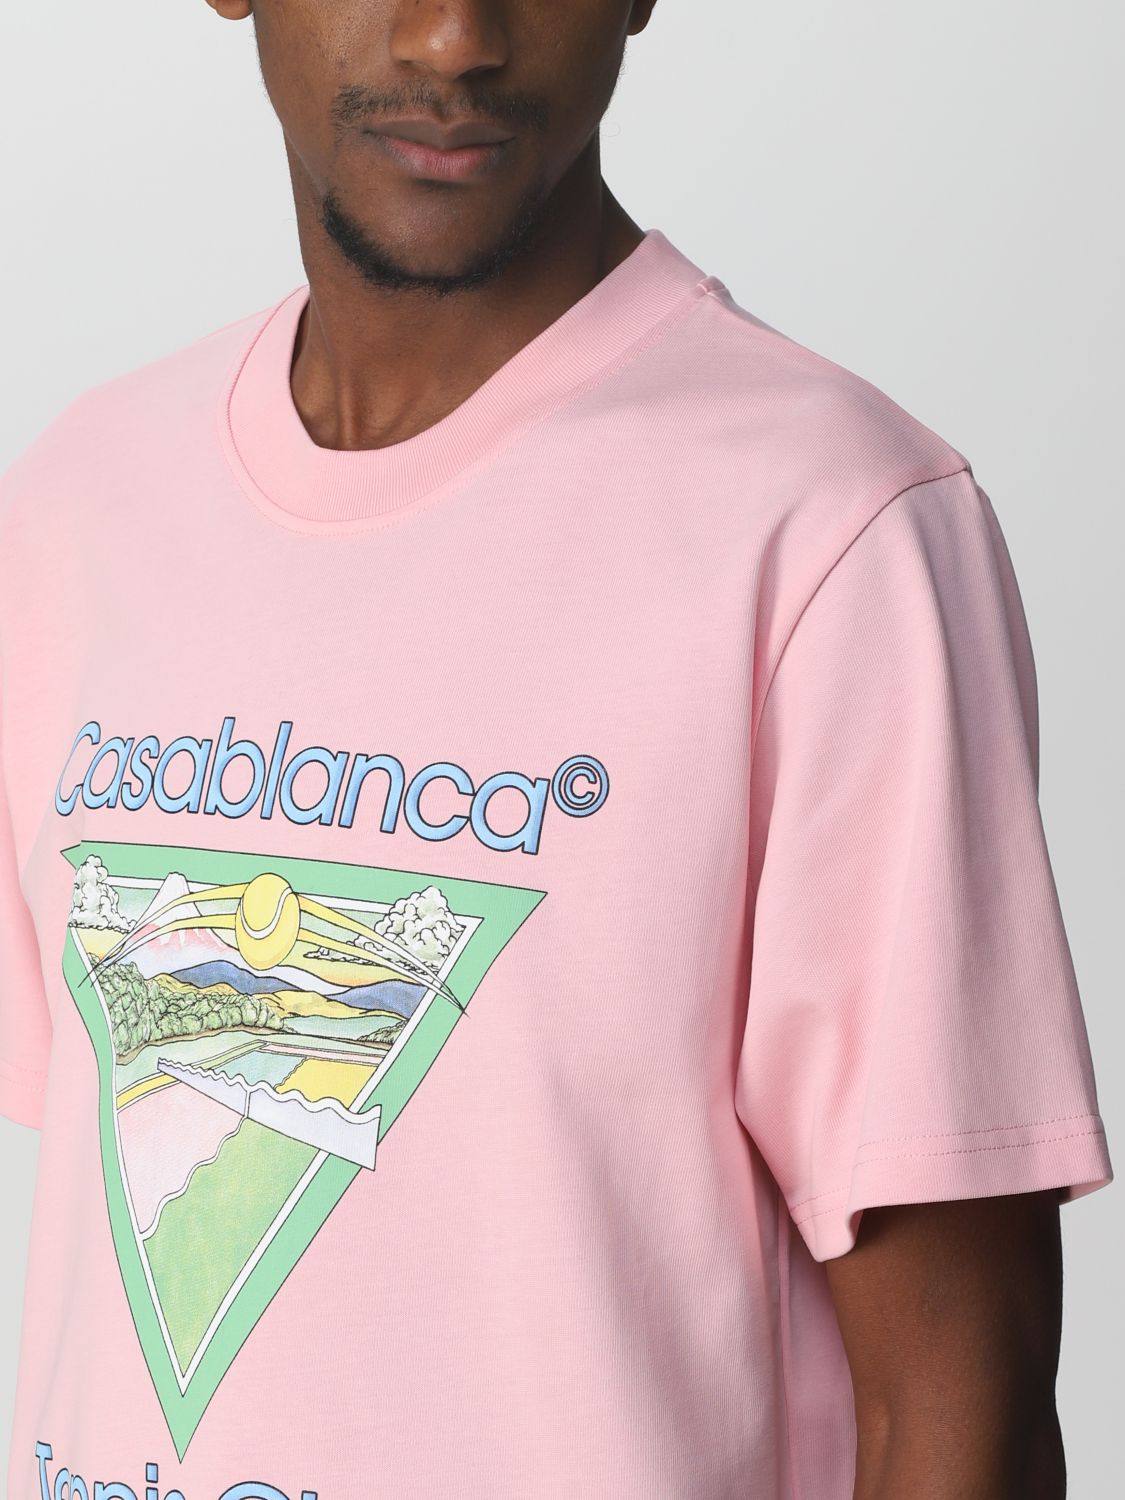 CASABLANCA: T-shirt men | T-Shirt Casablanca Men Pink | T-Shirt